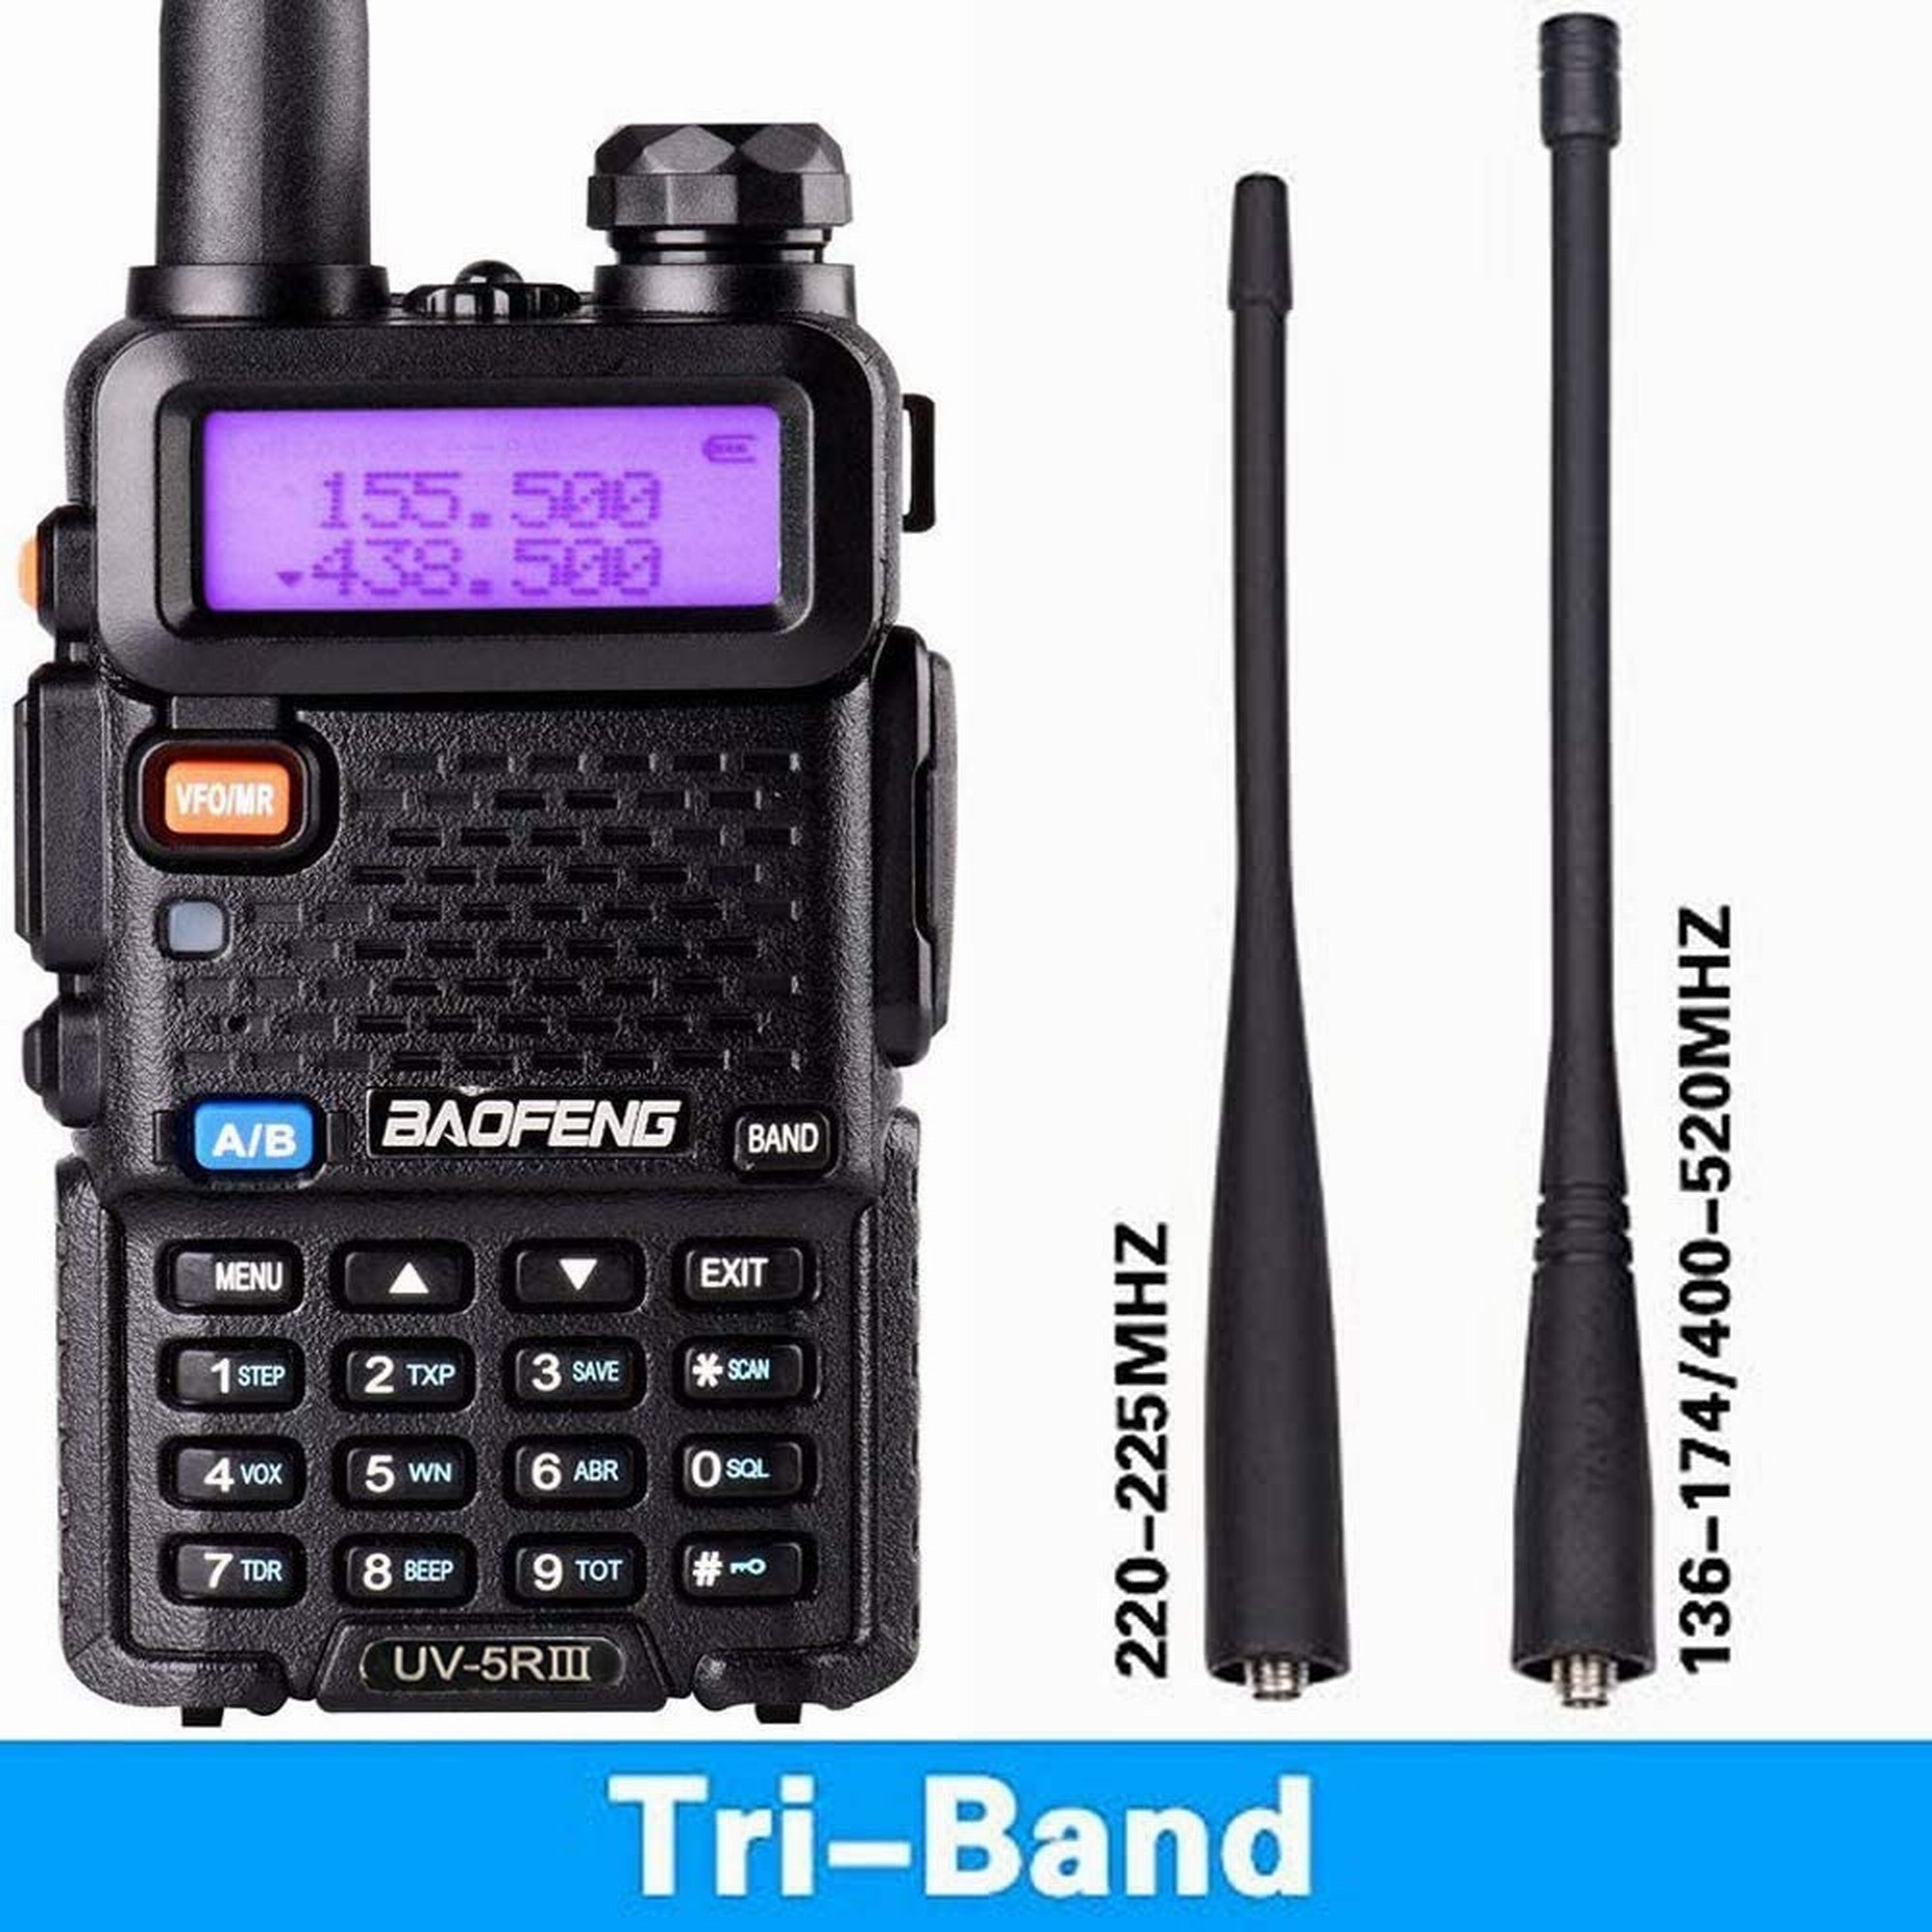 Pofung BaoFeng UV 5RIC VHF 144-148 MHz UHF 430-450 MHz Dual Band Two Way  Amateur Radio